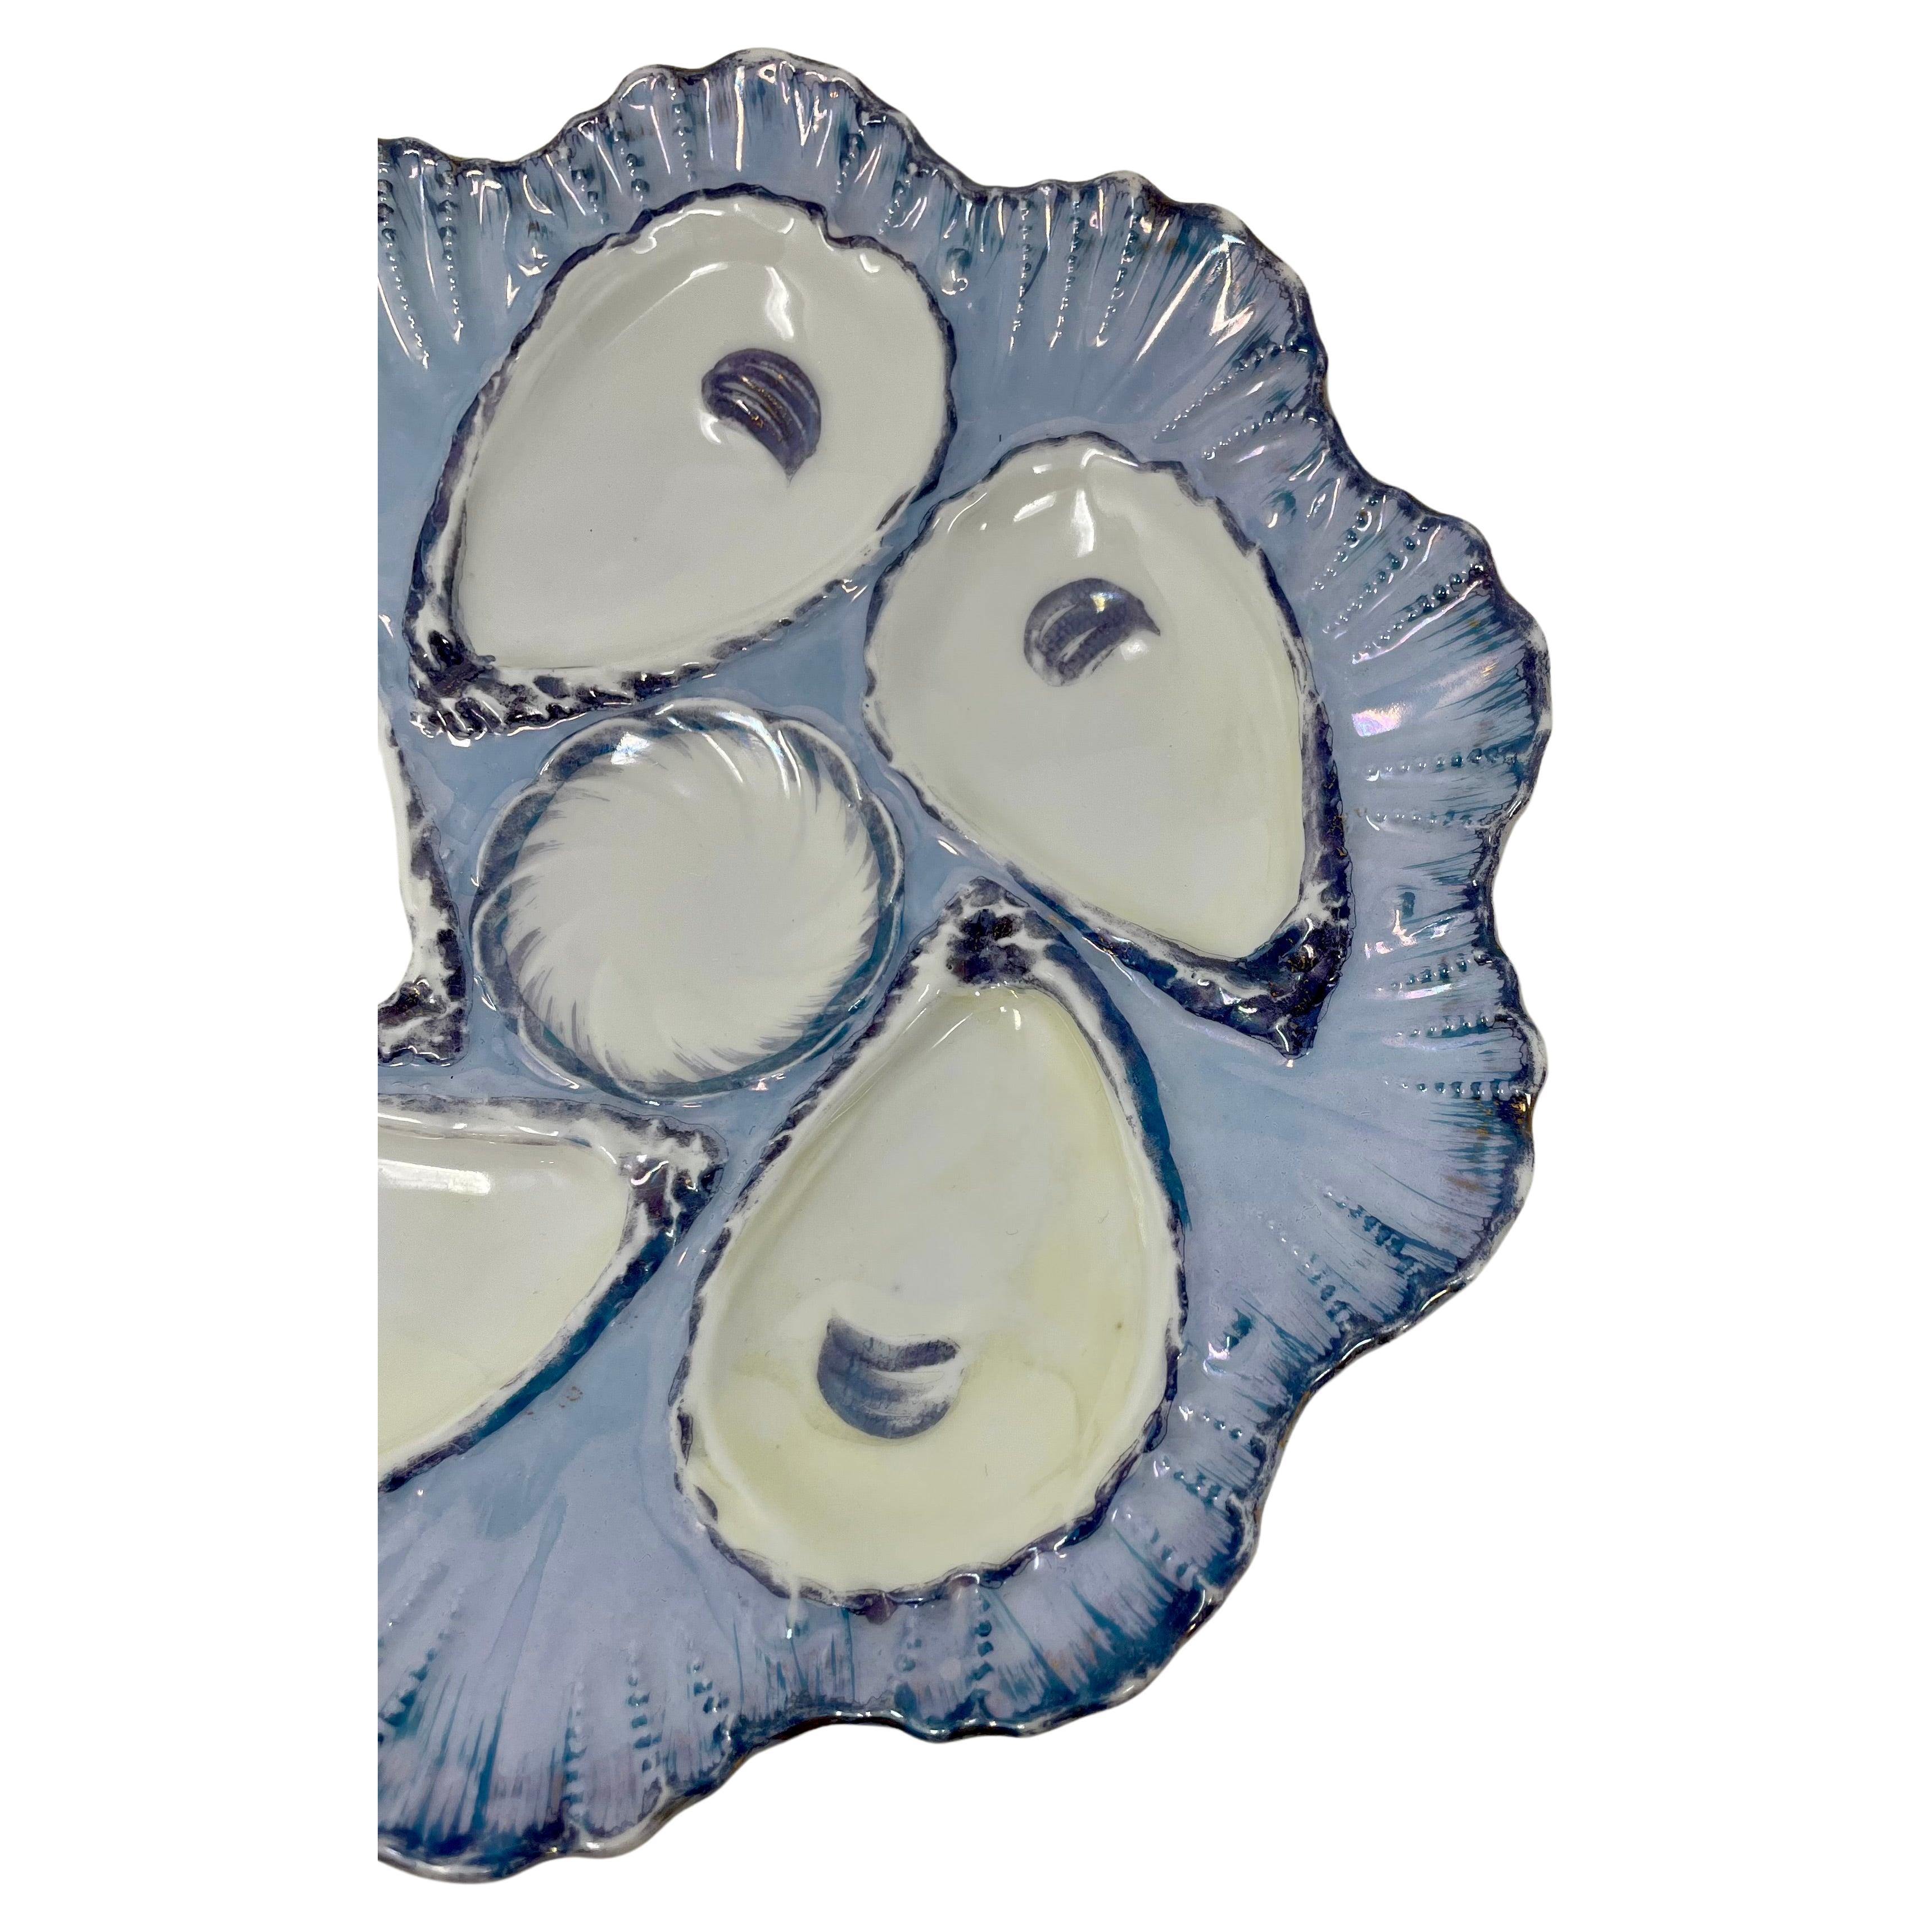 Antiker kontinentaler, handbemalter Porzellan-Austernteller, um 1880-1890.
Schöne und ungewöhnliche Farben von Veilchenblau und Lavendelblau